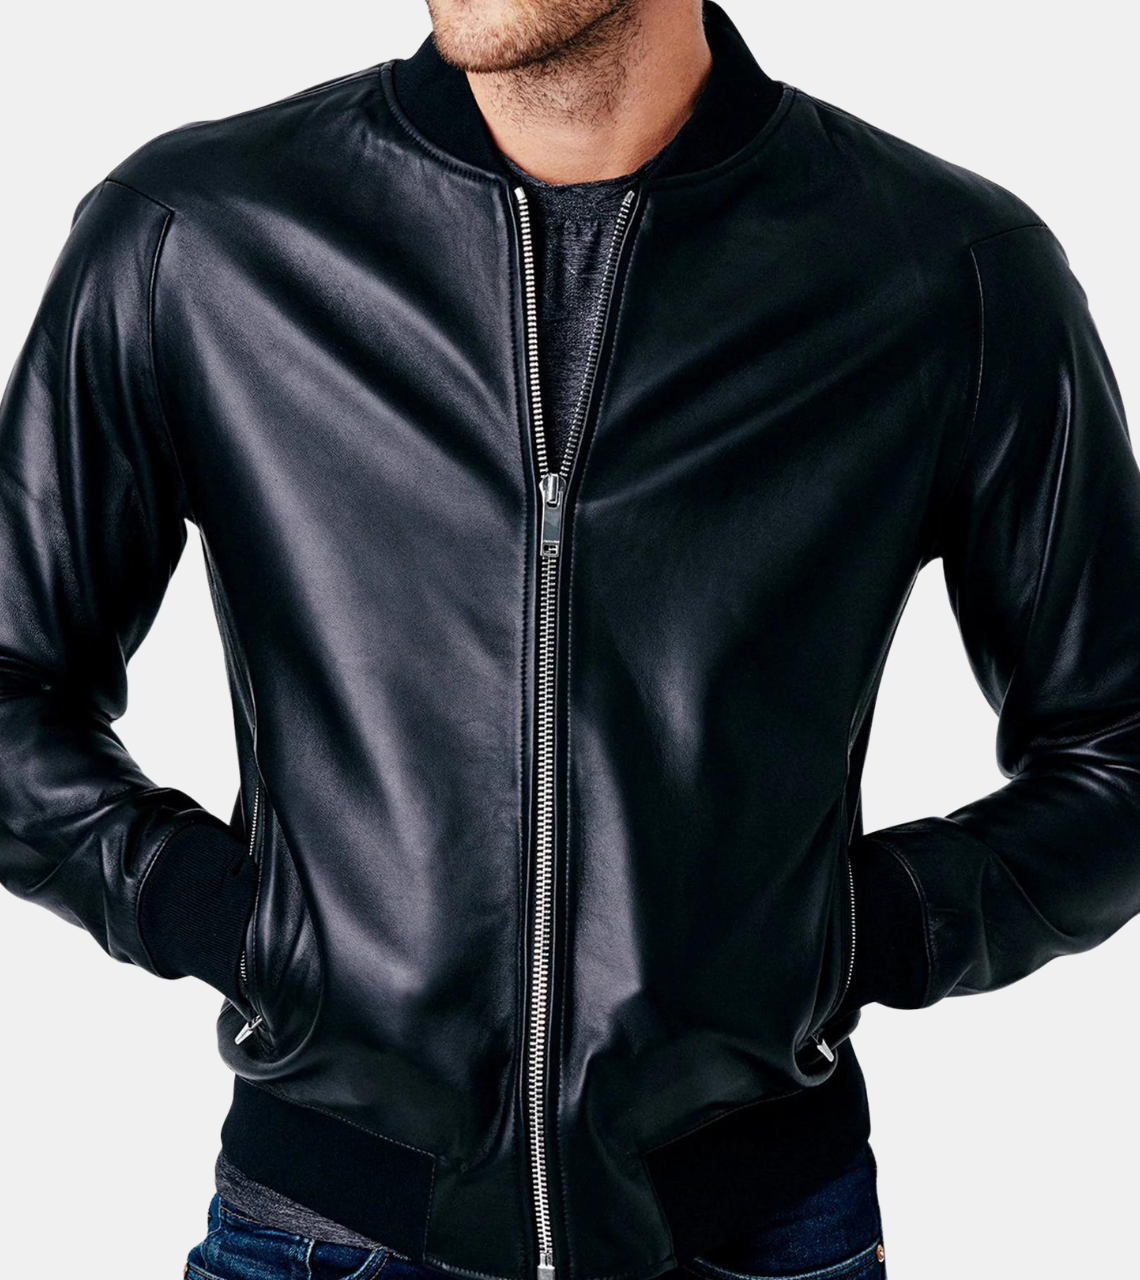 Clifer Men's Black Bomber Leather Jacket